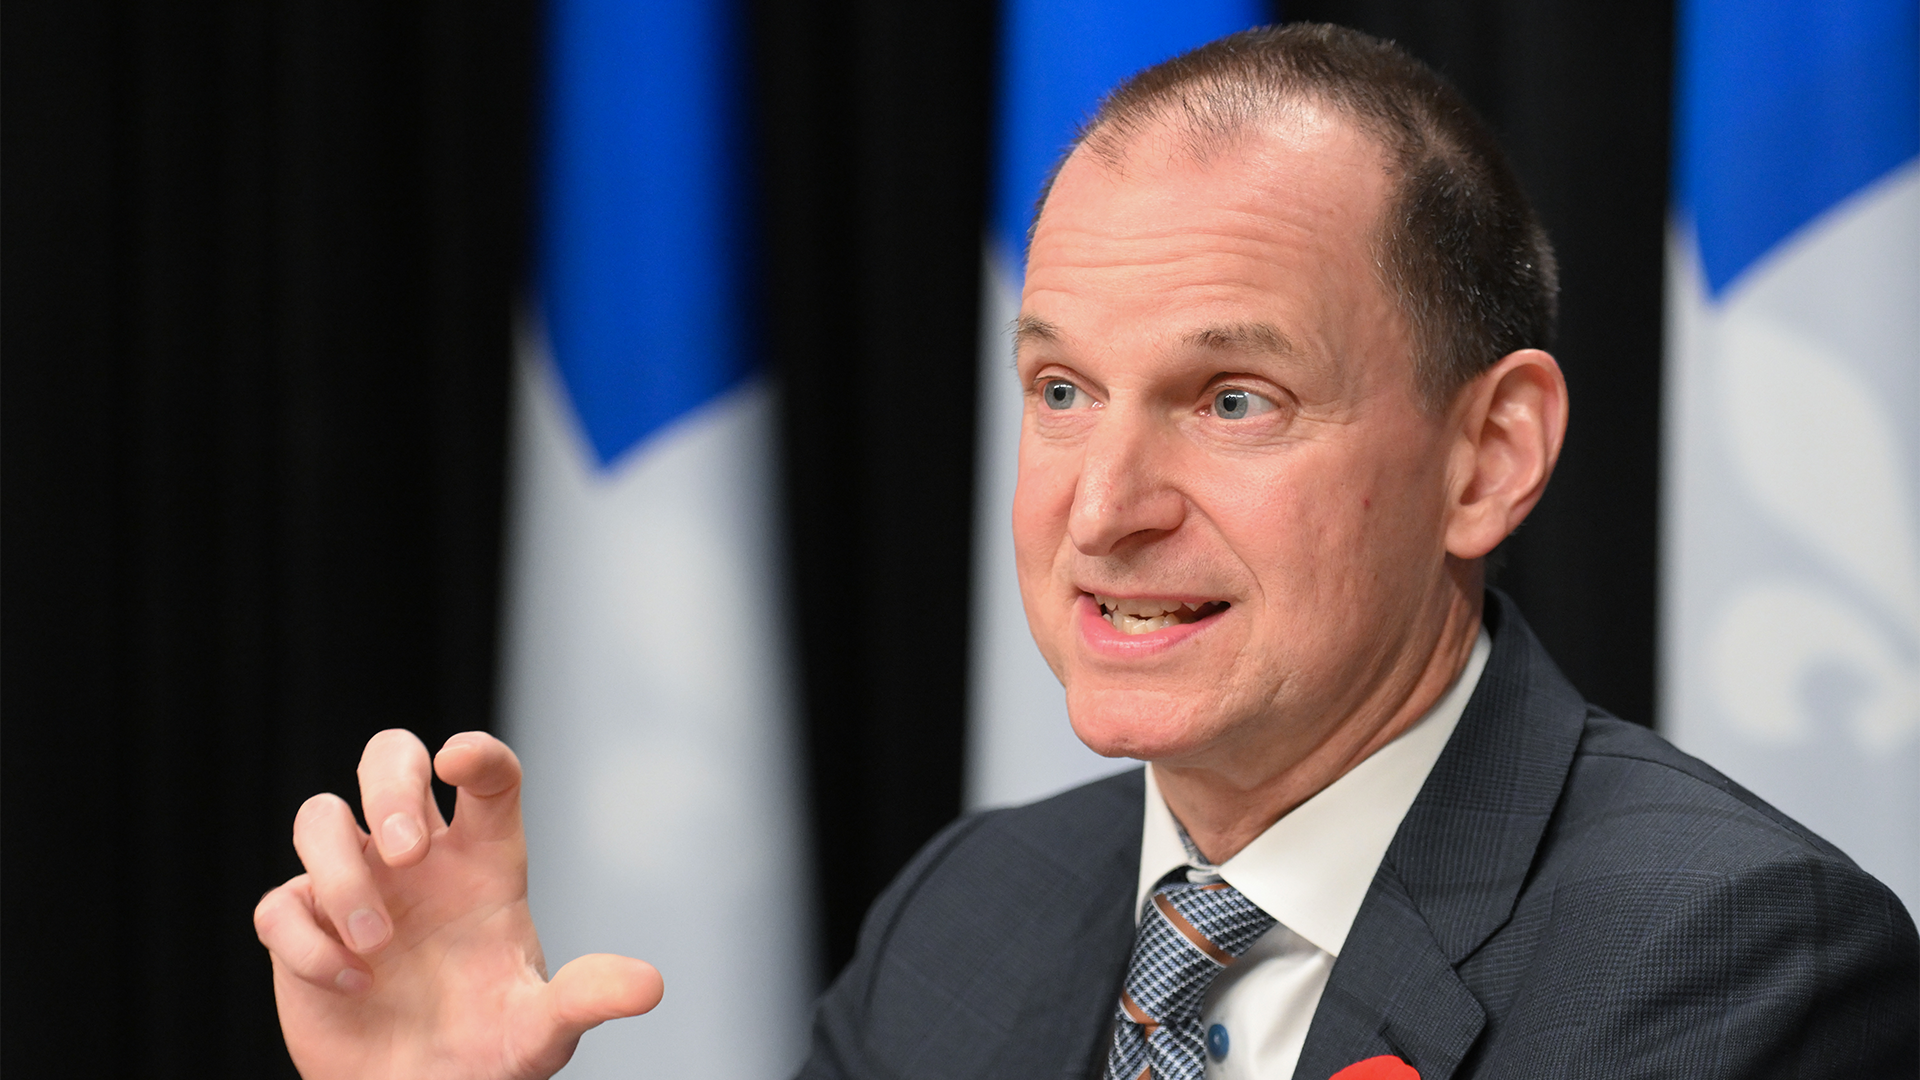 Le ministre des Finances du Québec, Eric Girard, a annoncé que le gouvernement limiterait à 3% l’indexation de certains tarifs.